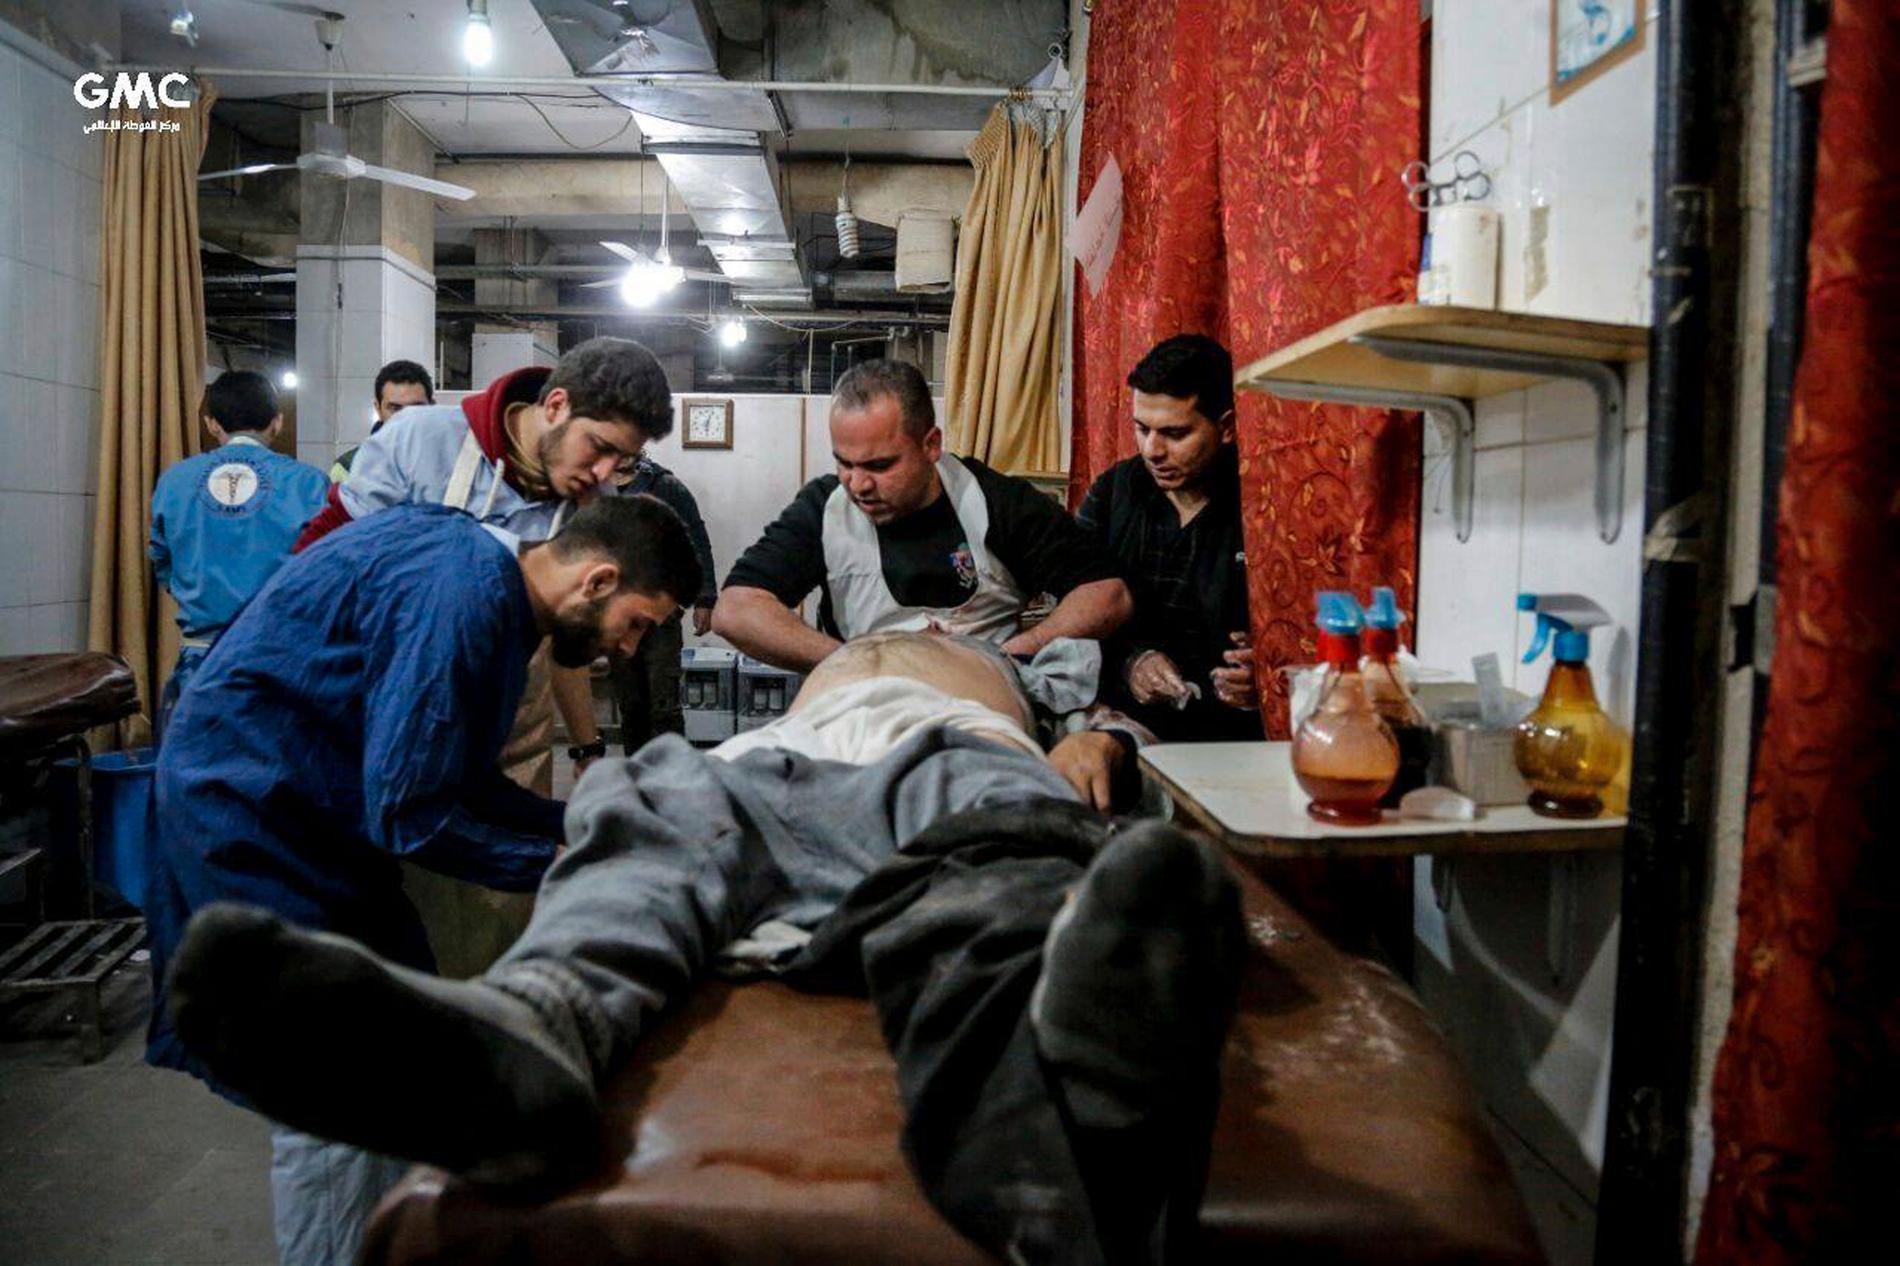 Sjukhusen i östra Ghouta har stängt på grund av attackerna. Här syns vårdpersonal ta hand om en skadad man på en provisorisk klinik. Bilden kommer från det regimkritiska aktivistnätverket Ghouta Media Center och distribueras av nyhetsbyrån AP.